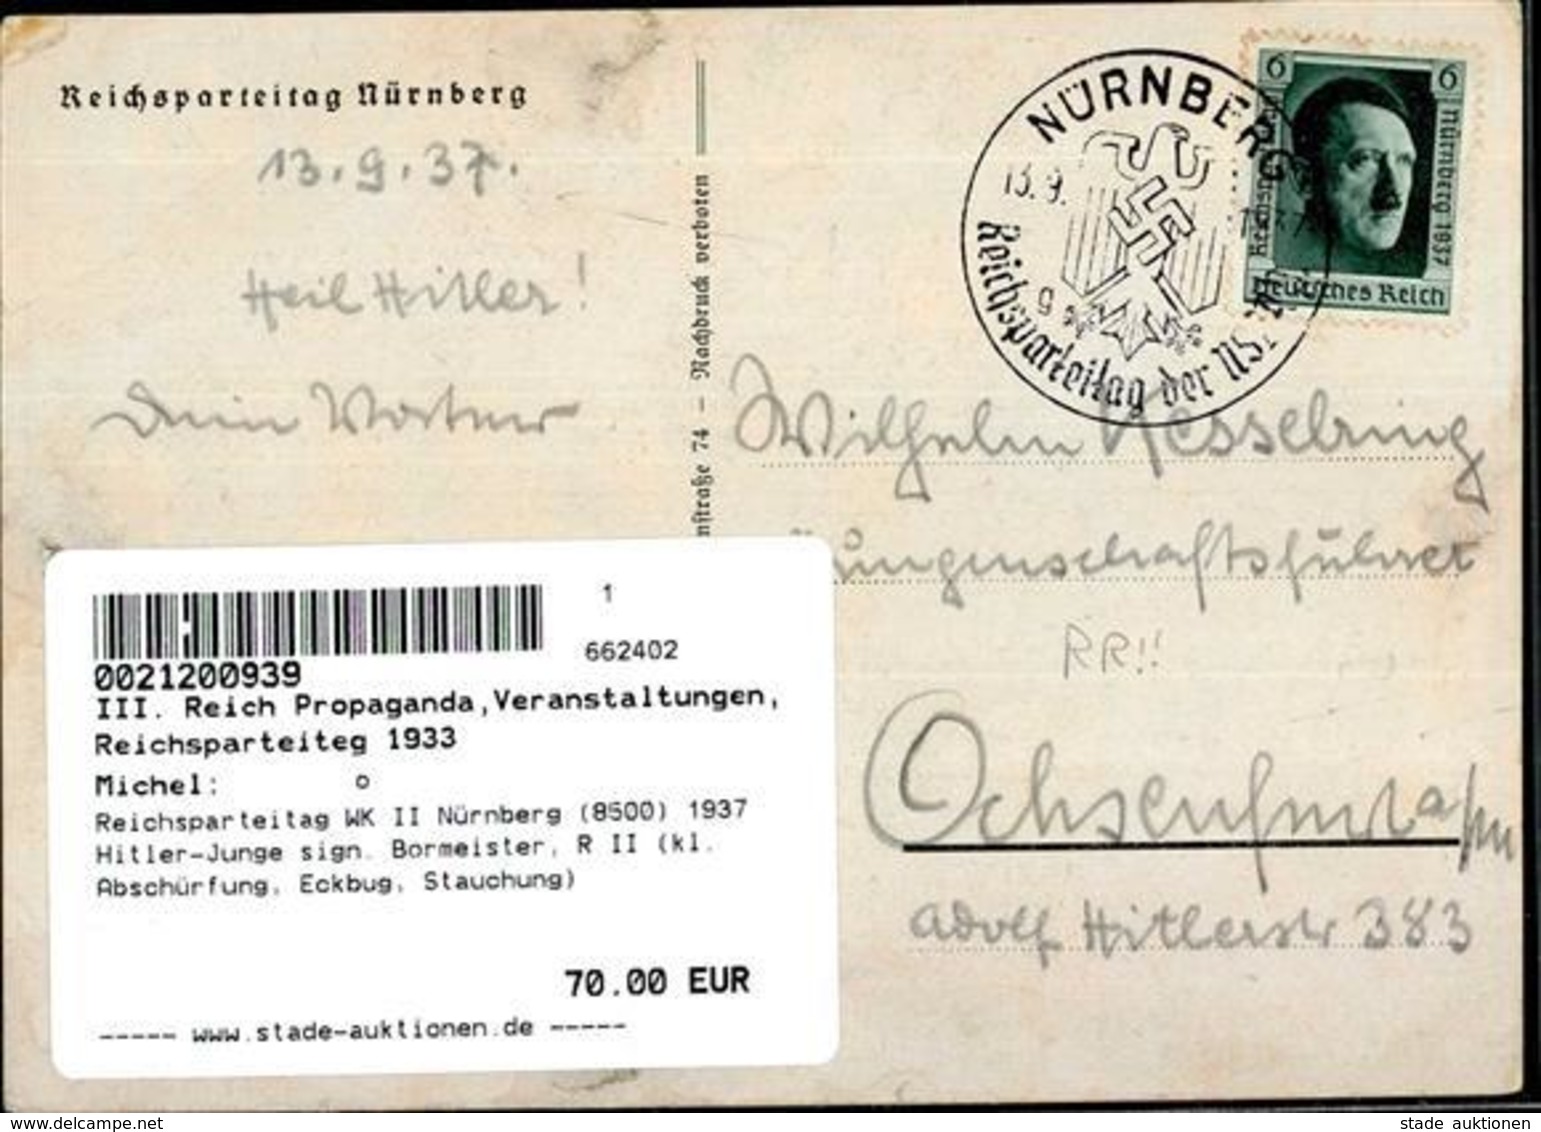 Reichsparteitag WK II Nürnberg (8500) 1937 Hitler-Junge Sign. Bormeister, R II (kl. Abschürfung, Eckbug, Stauchung) - Weltkrieg 1939-45